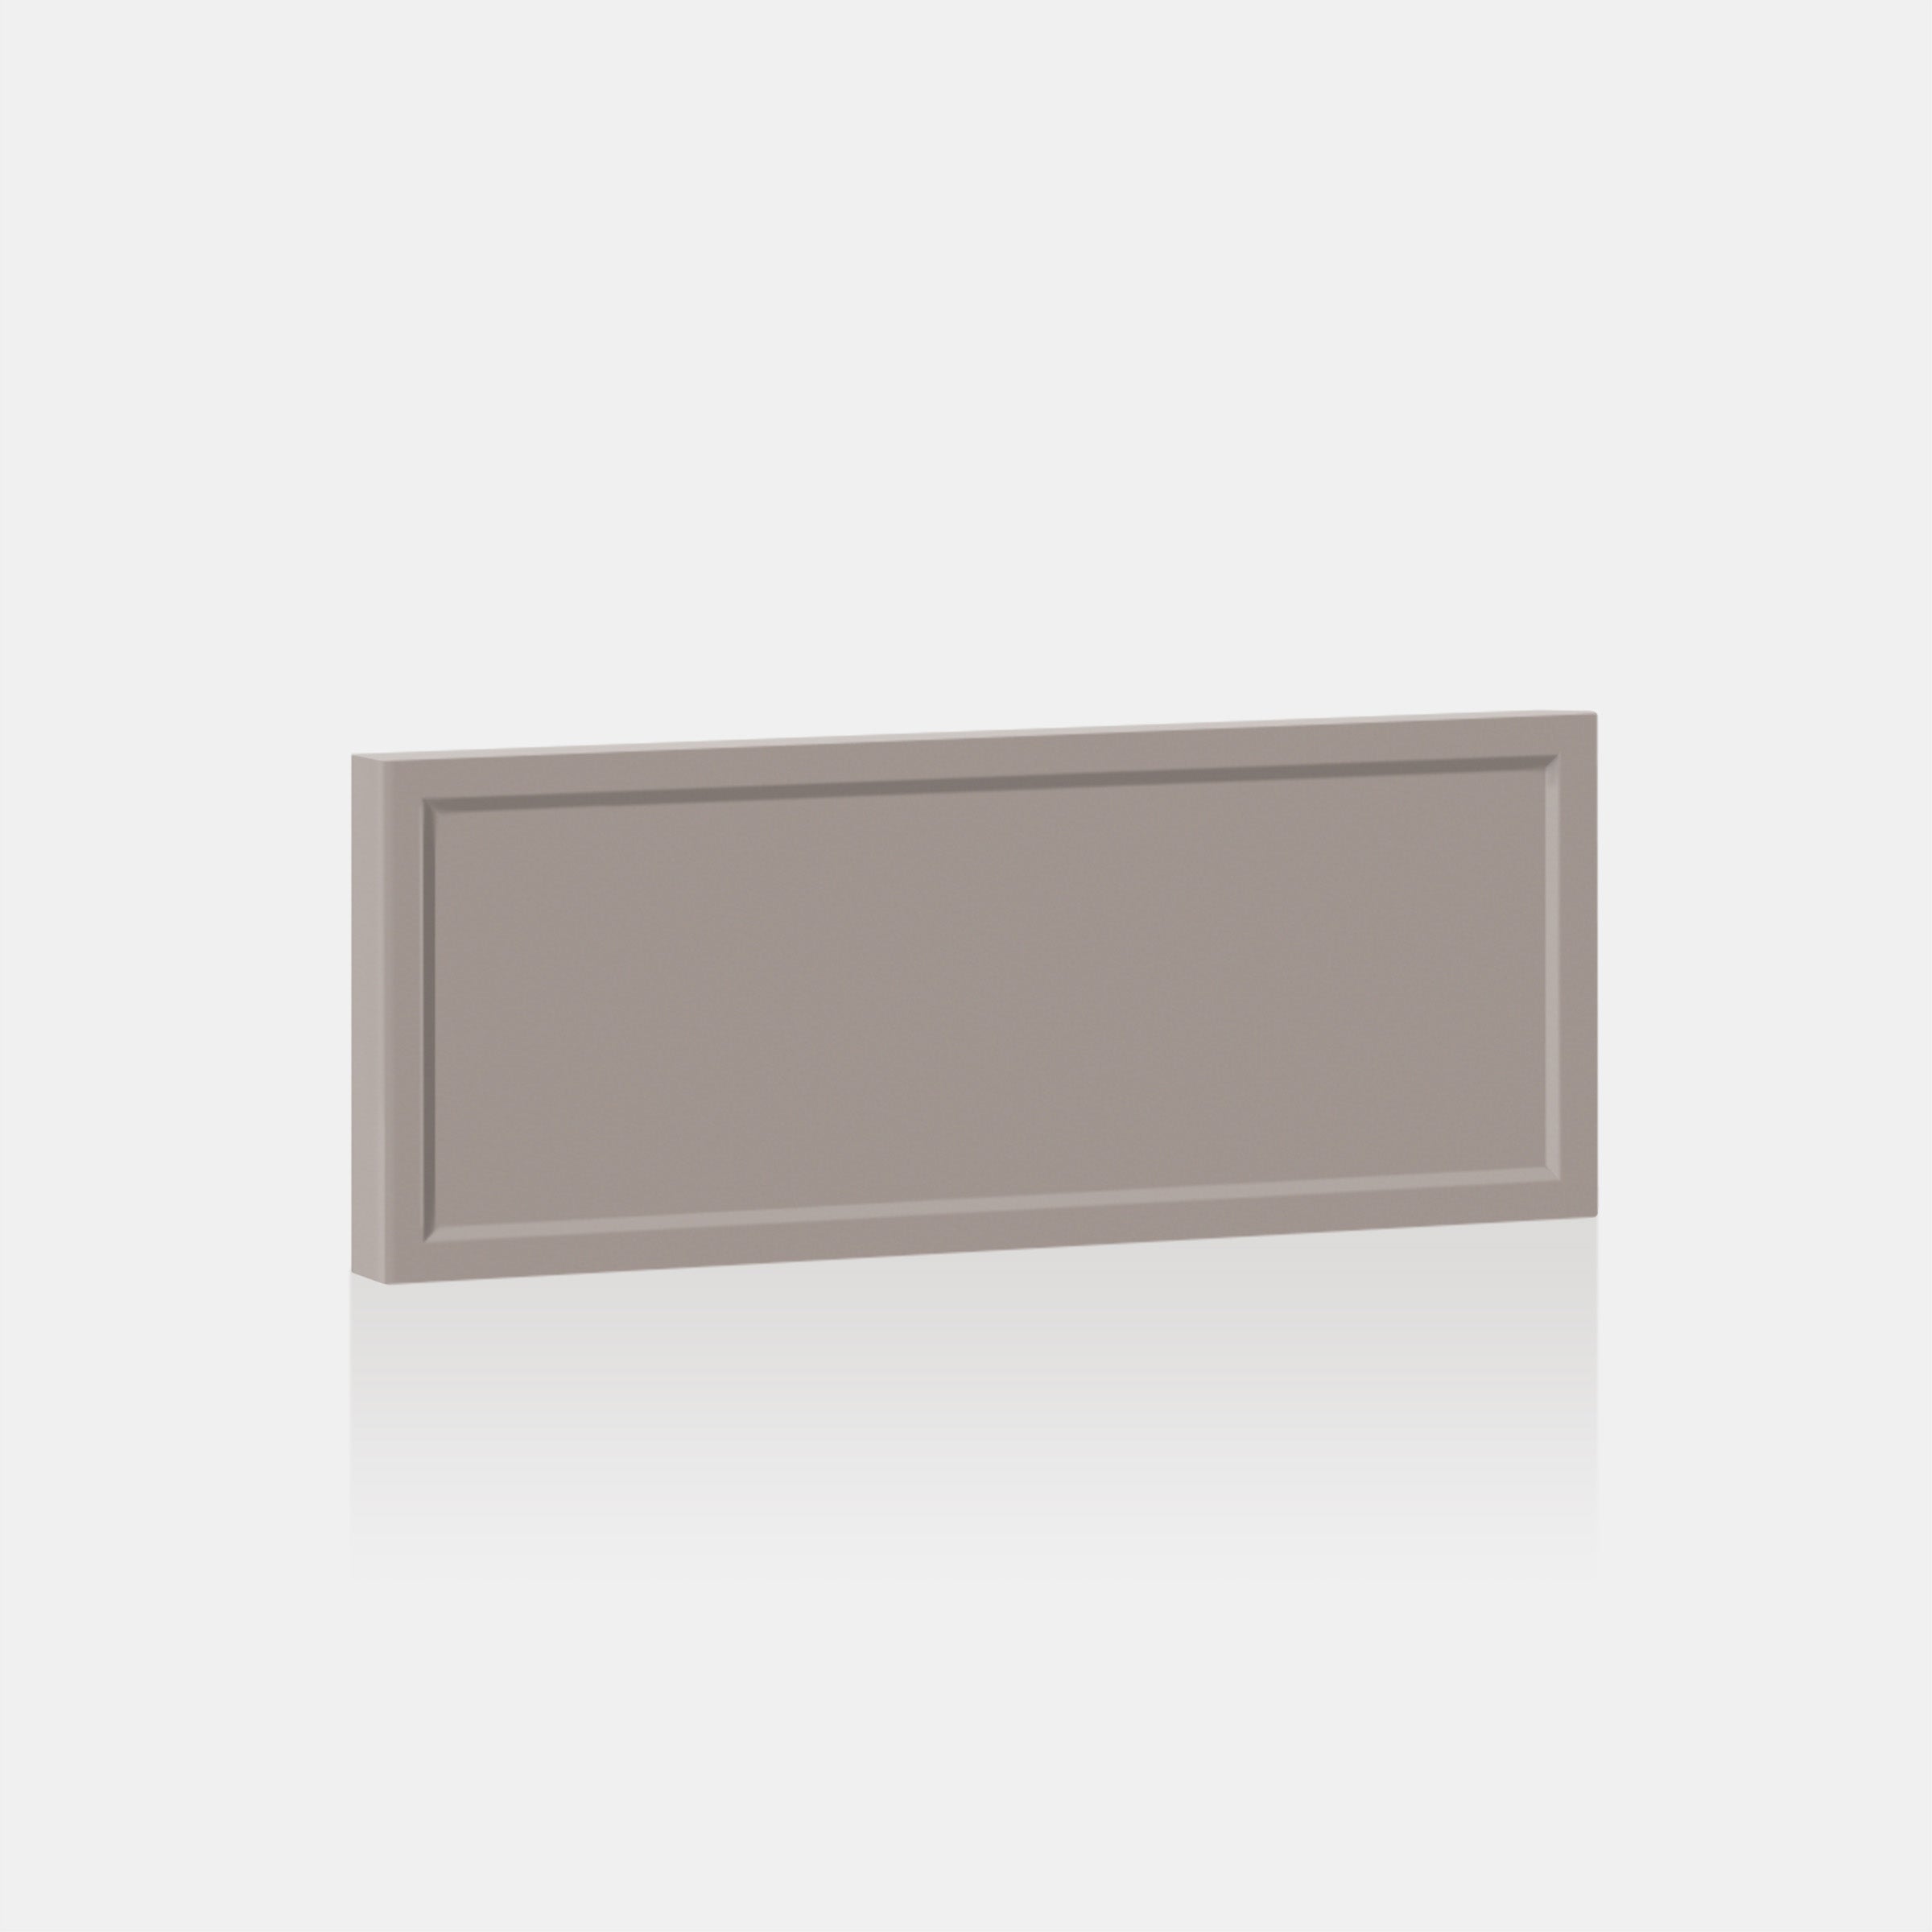 Desert Grey Quarterline Front for Besta 23 ⅝ " x 10 ¼ " - Drawer / Desert Grey